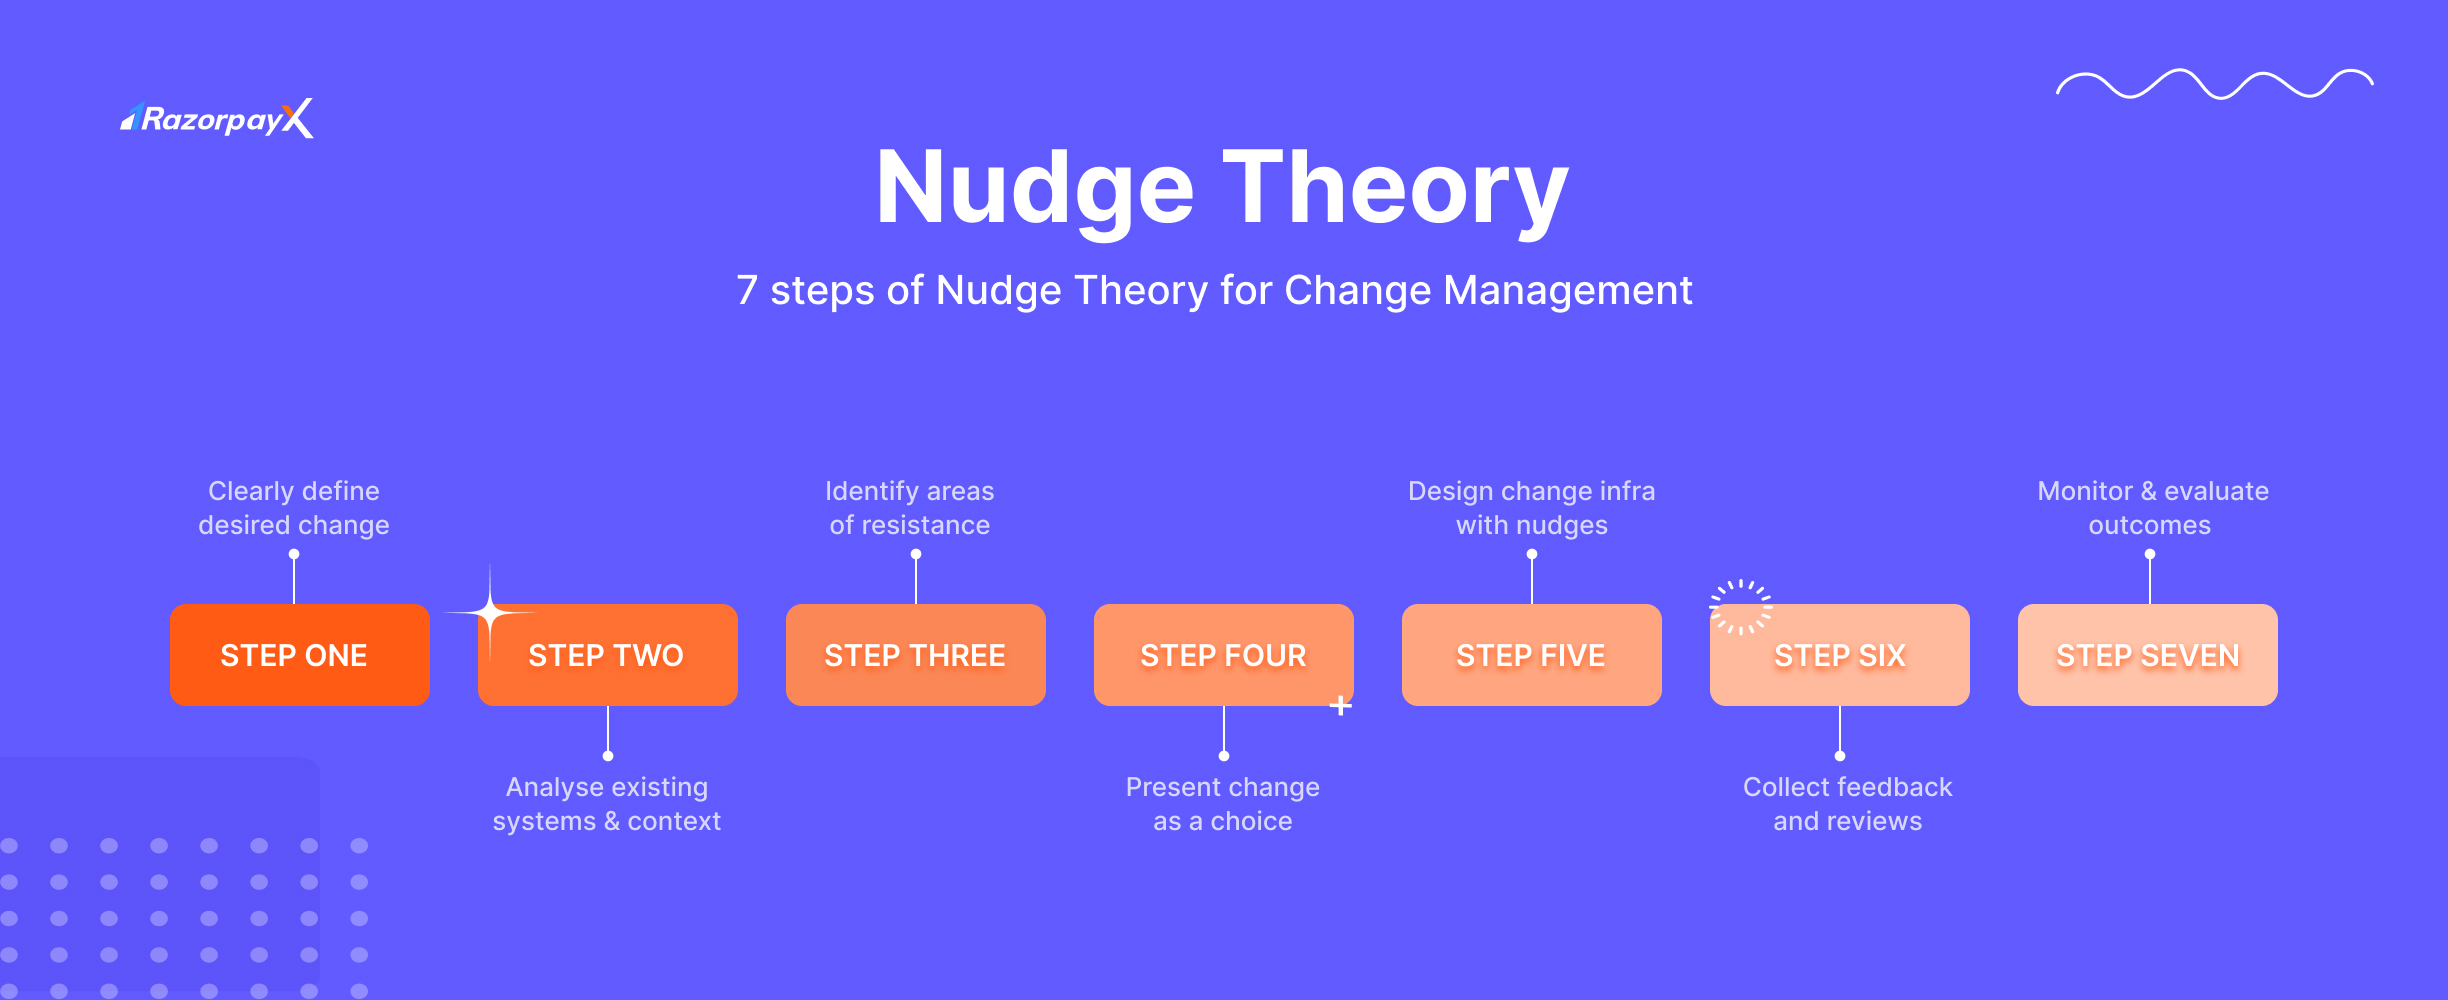 nudge theory